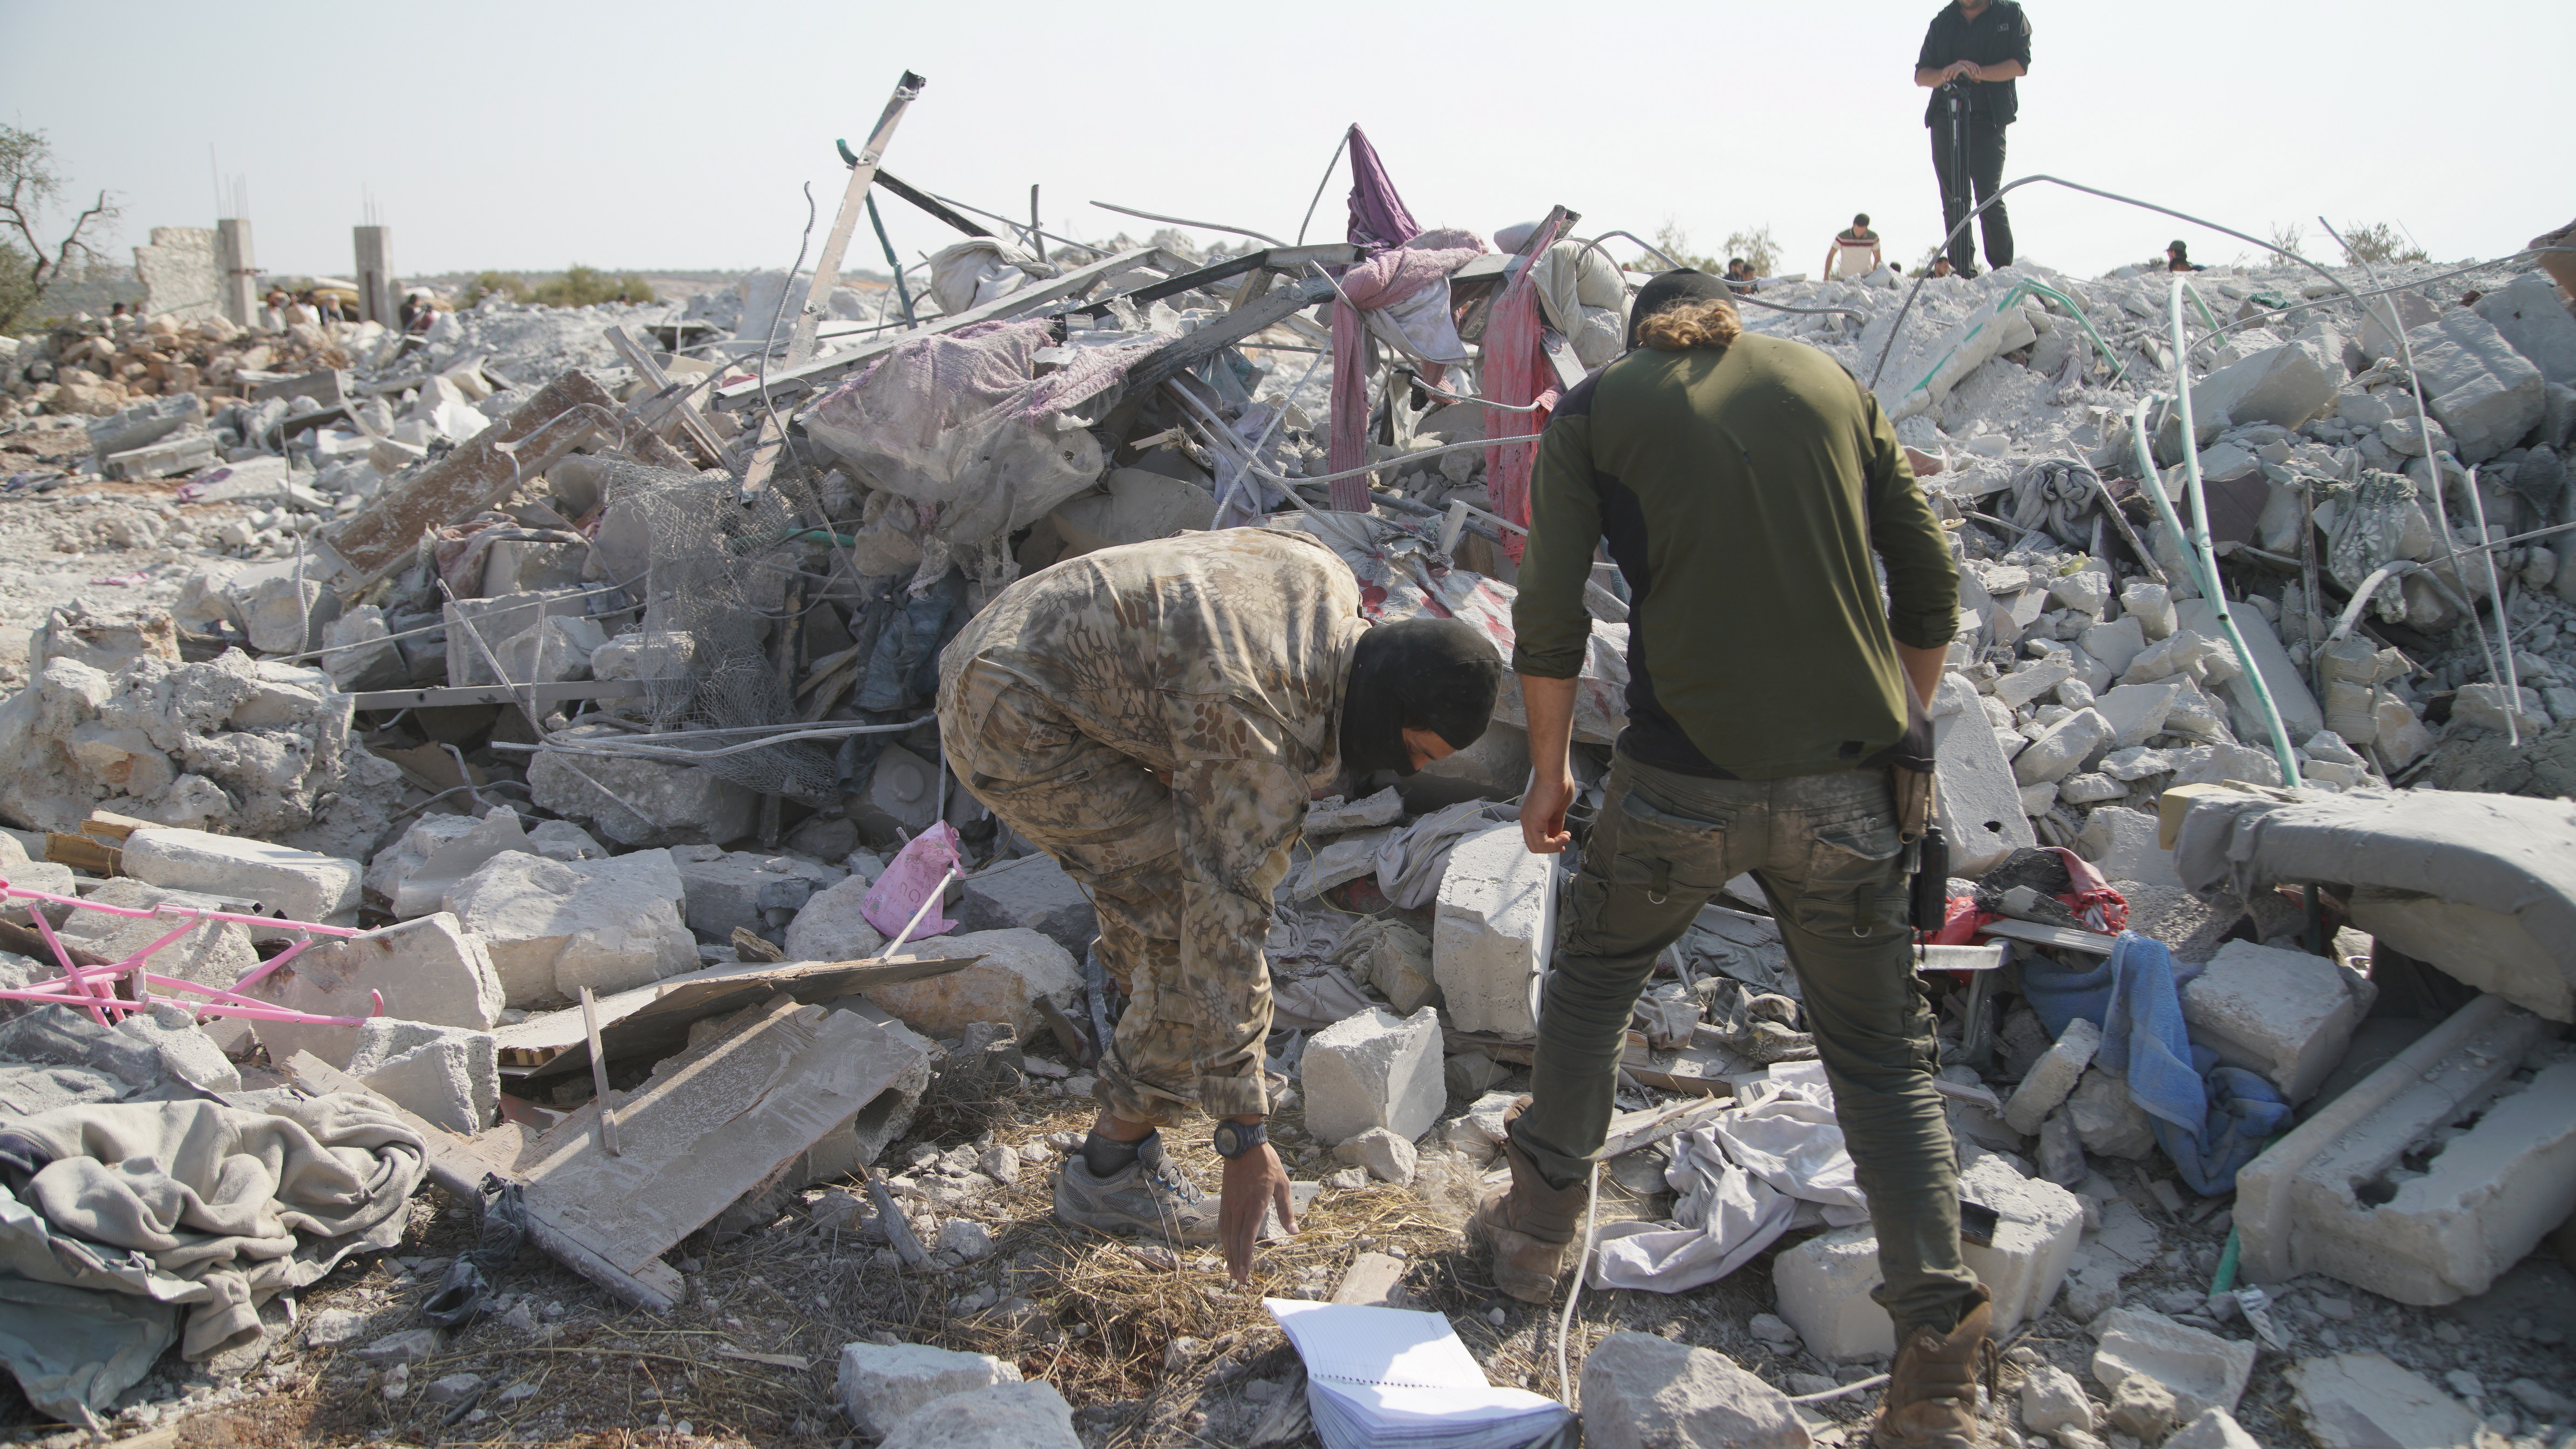 На снимките: Хора обикалят около развалините на разрушените сгради на мястото, което беше обстреляно в неделя. Според съобщения загинали са девет души, включително Абу Бейкър Ал Багдади - лидерът на "Ислямска държава". Кадрите са заснети близо до село Бариша, провинция Идлиб, Сирия, 27 октомври 2019 г. (издаден на 28 октомври 2019 г.)